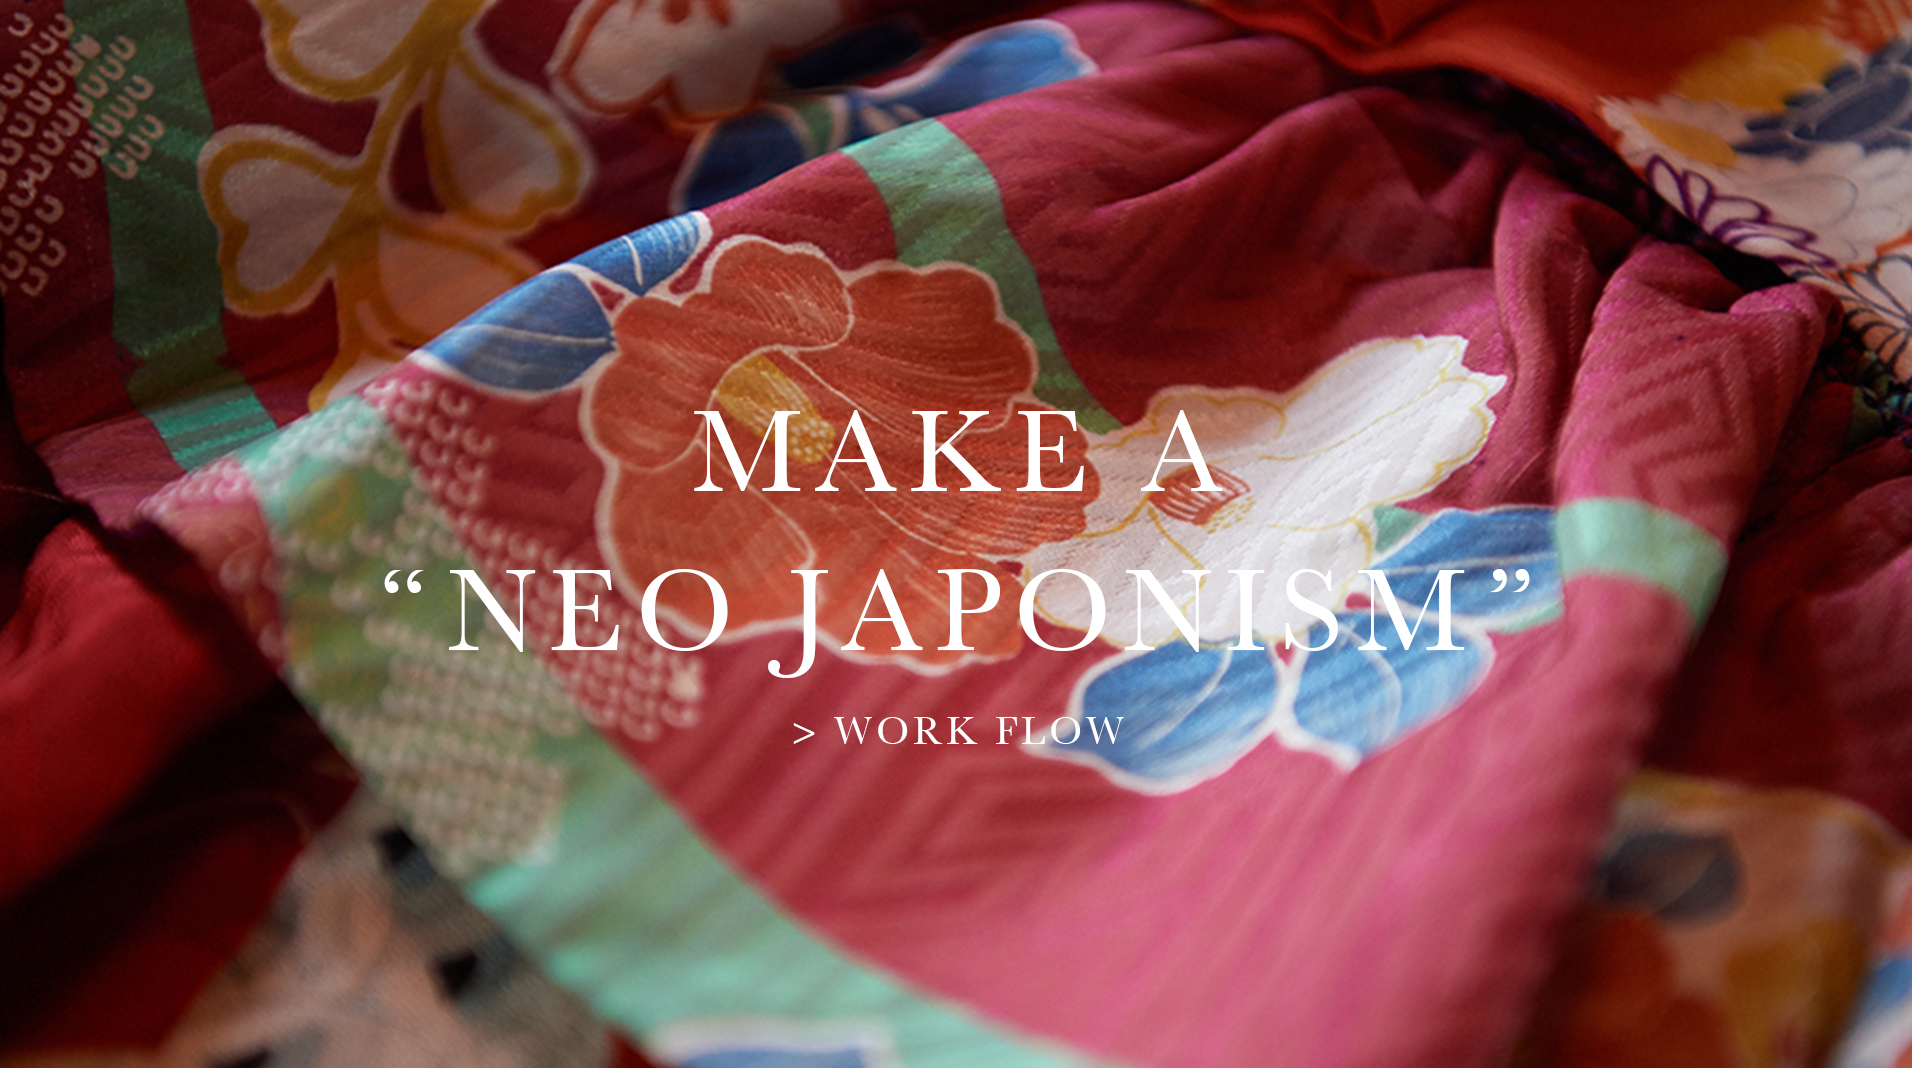 Make a “NEO JAPONISM” 留袖・振袖など着物をリメイクしてドレスへ